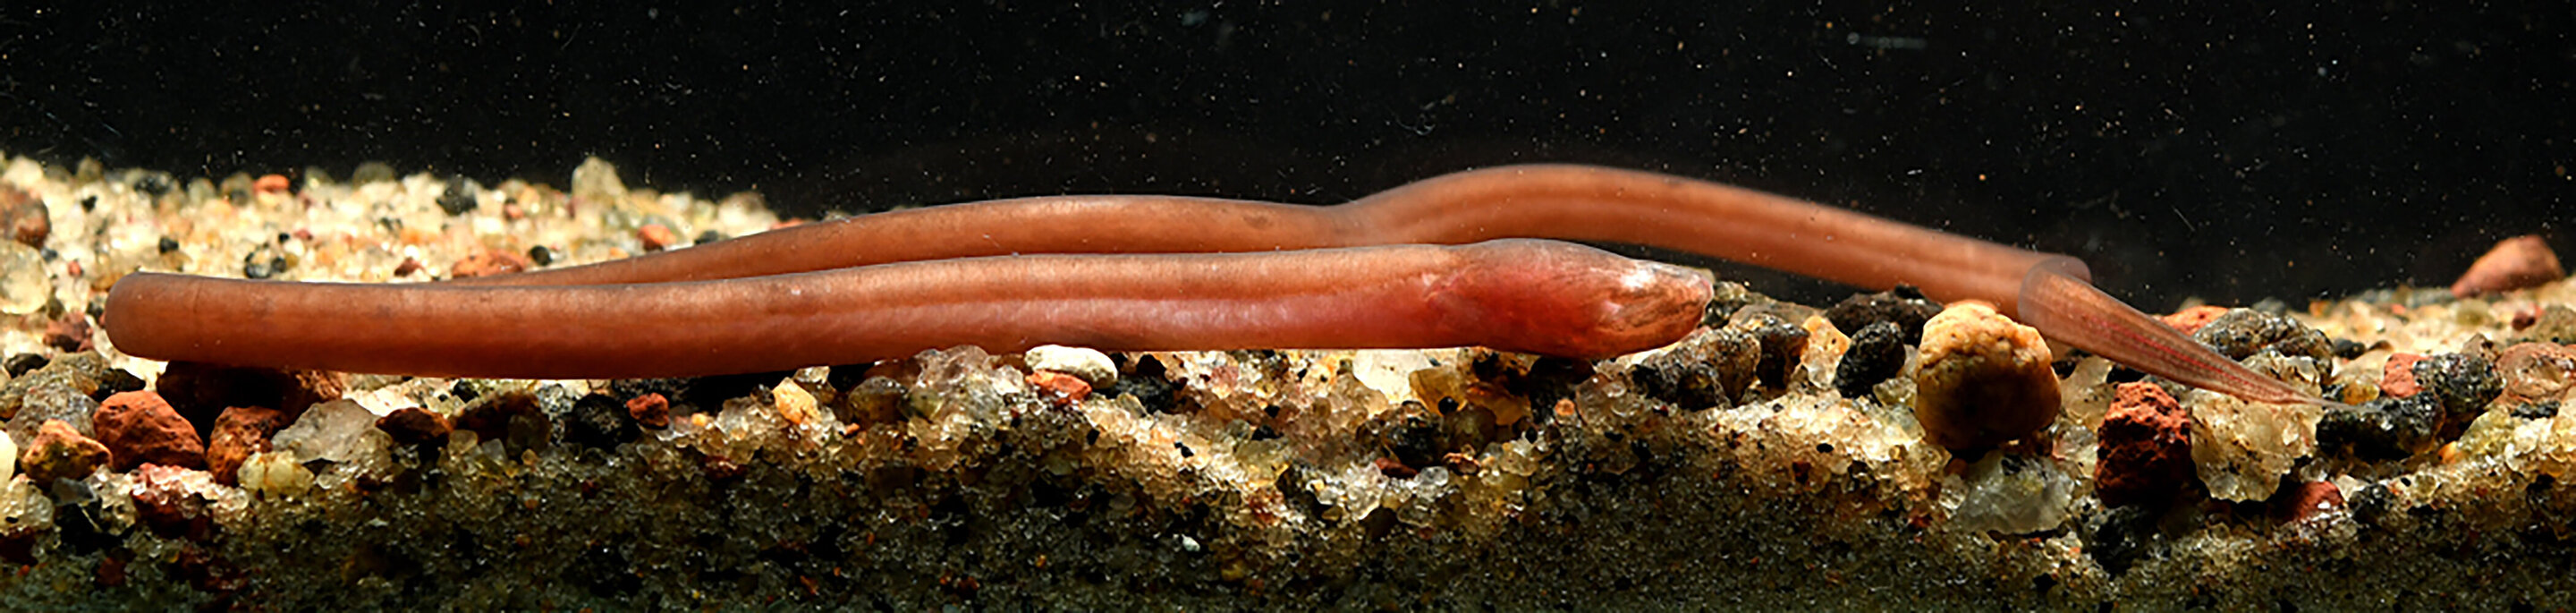 Жители подземных вод: ученые открыли новый вид рыб (ФОТО) - фото 3